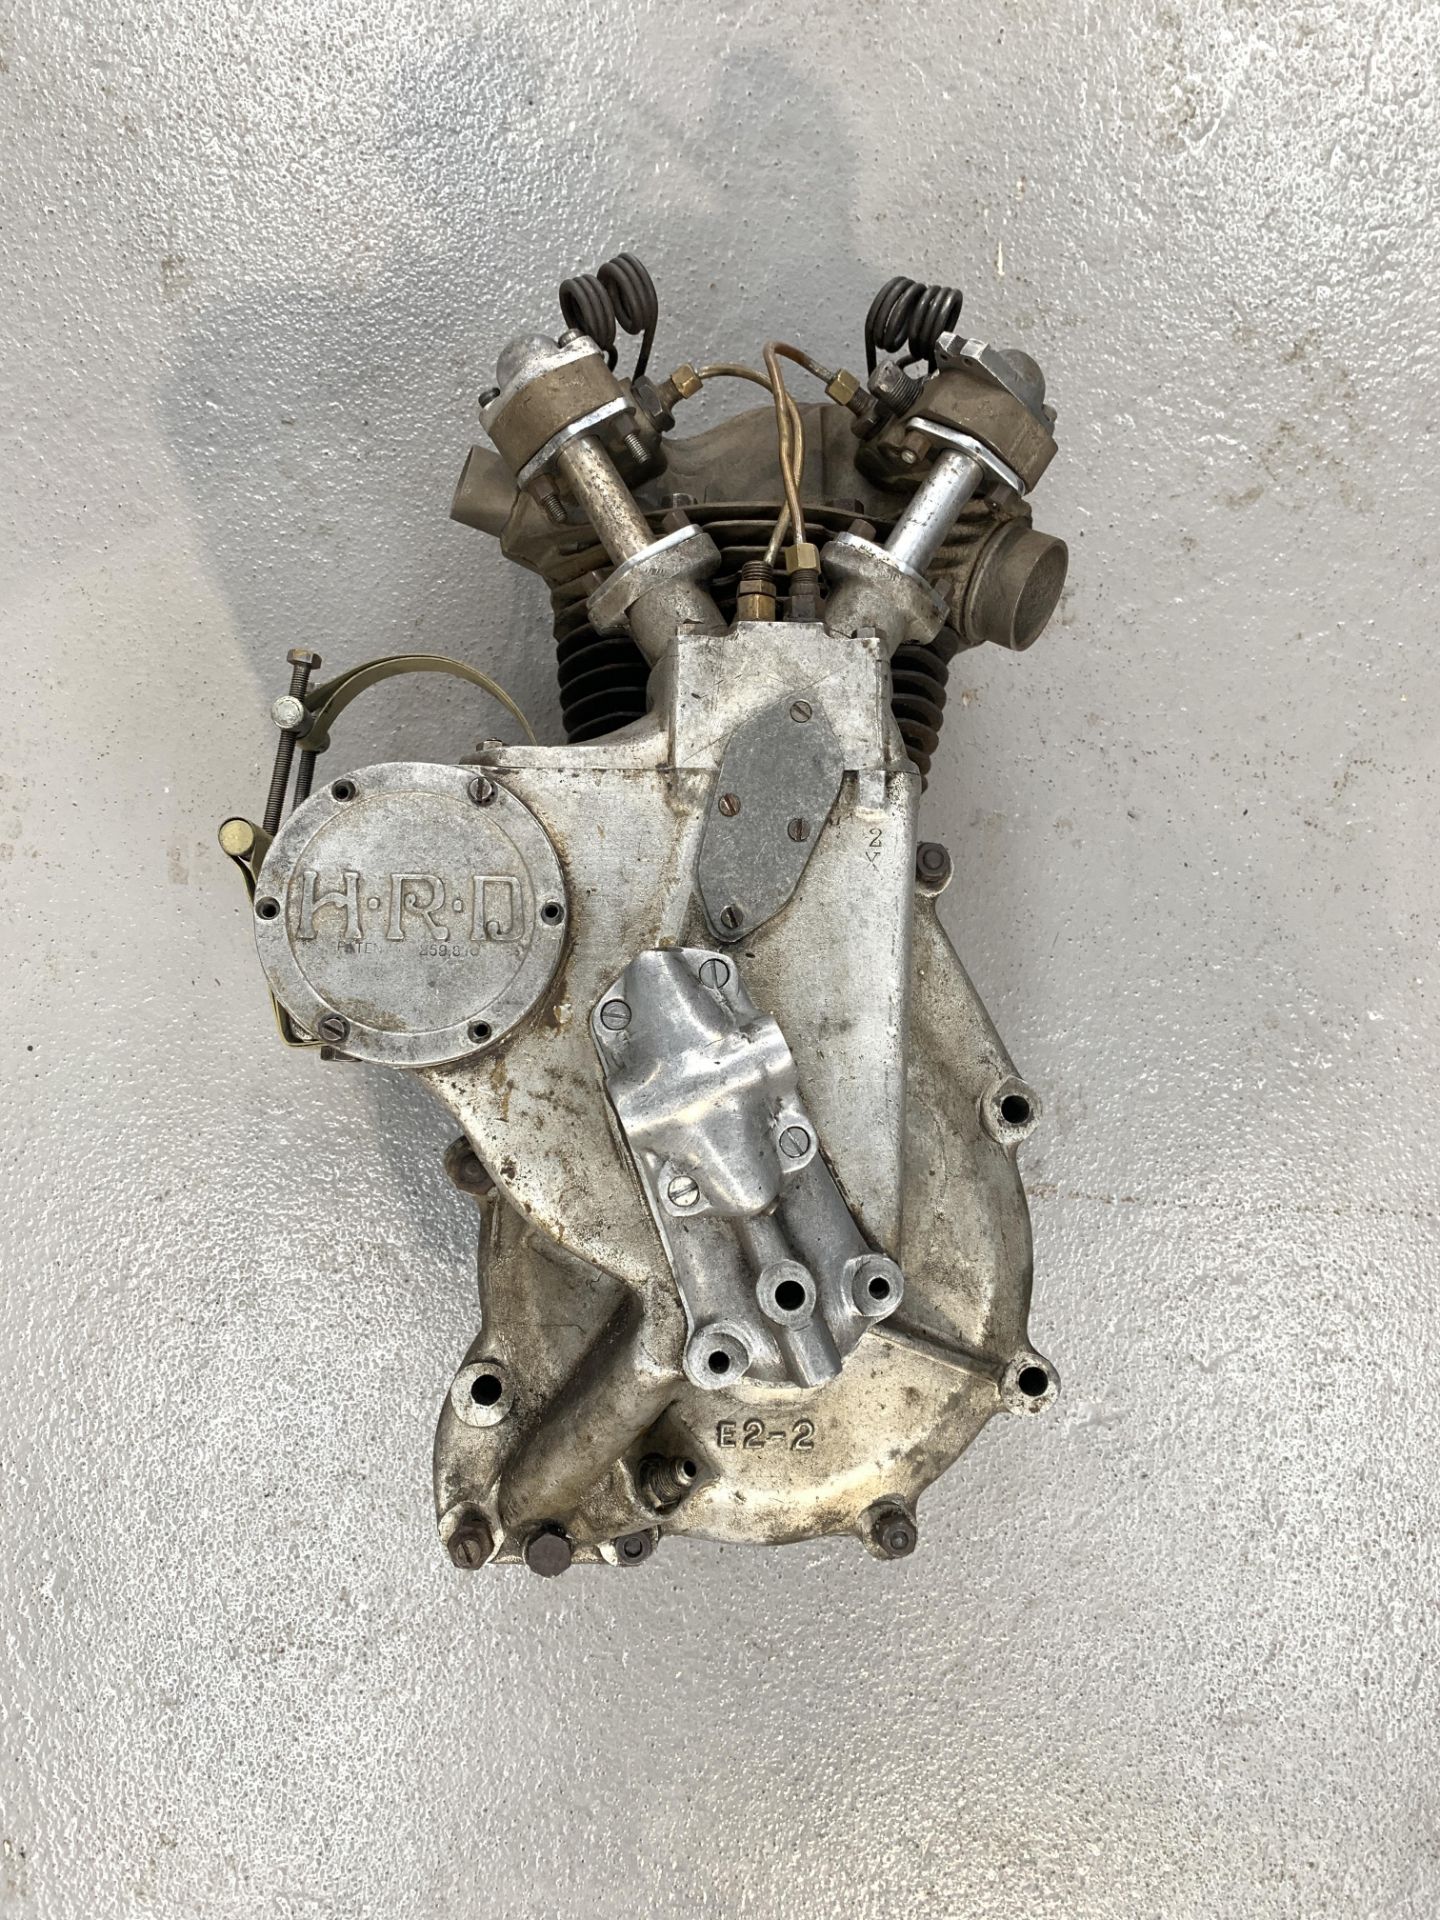 A Vincent-HRD Series-A engine